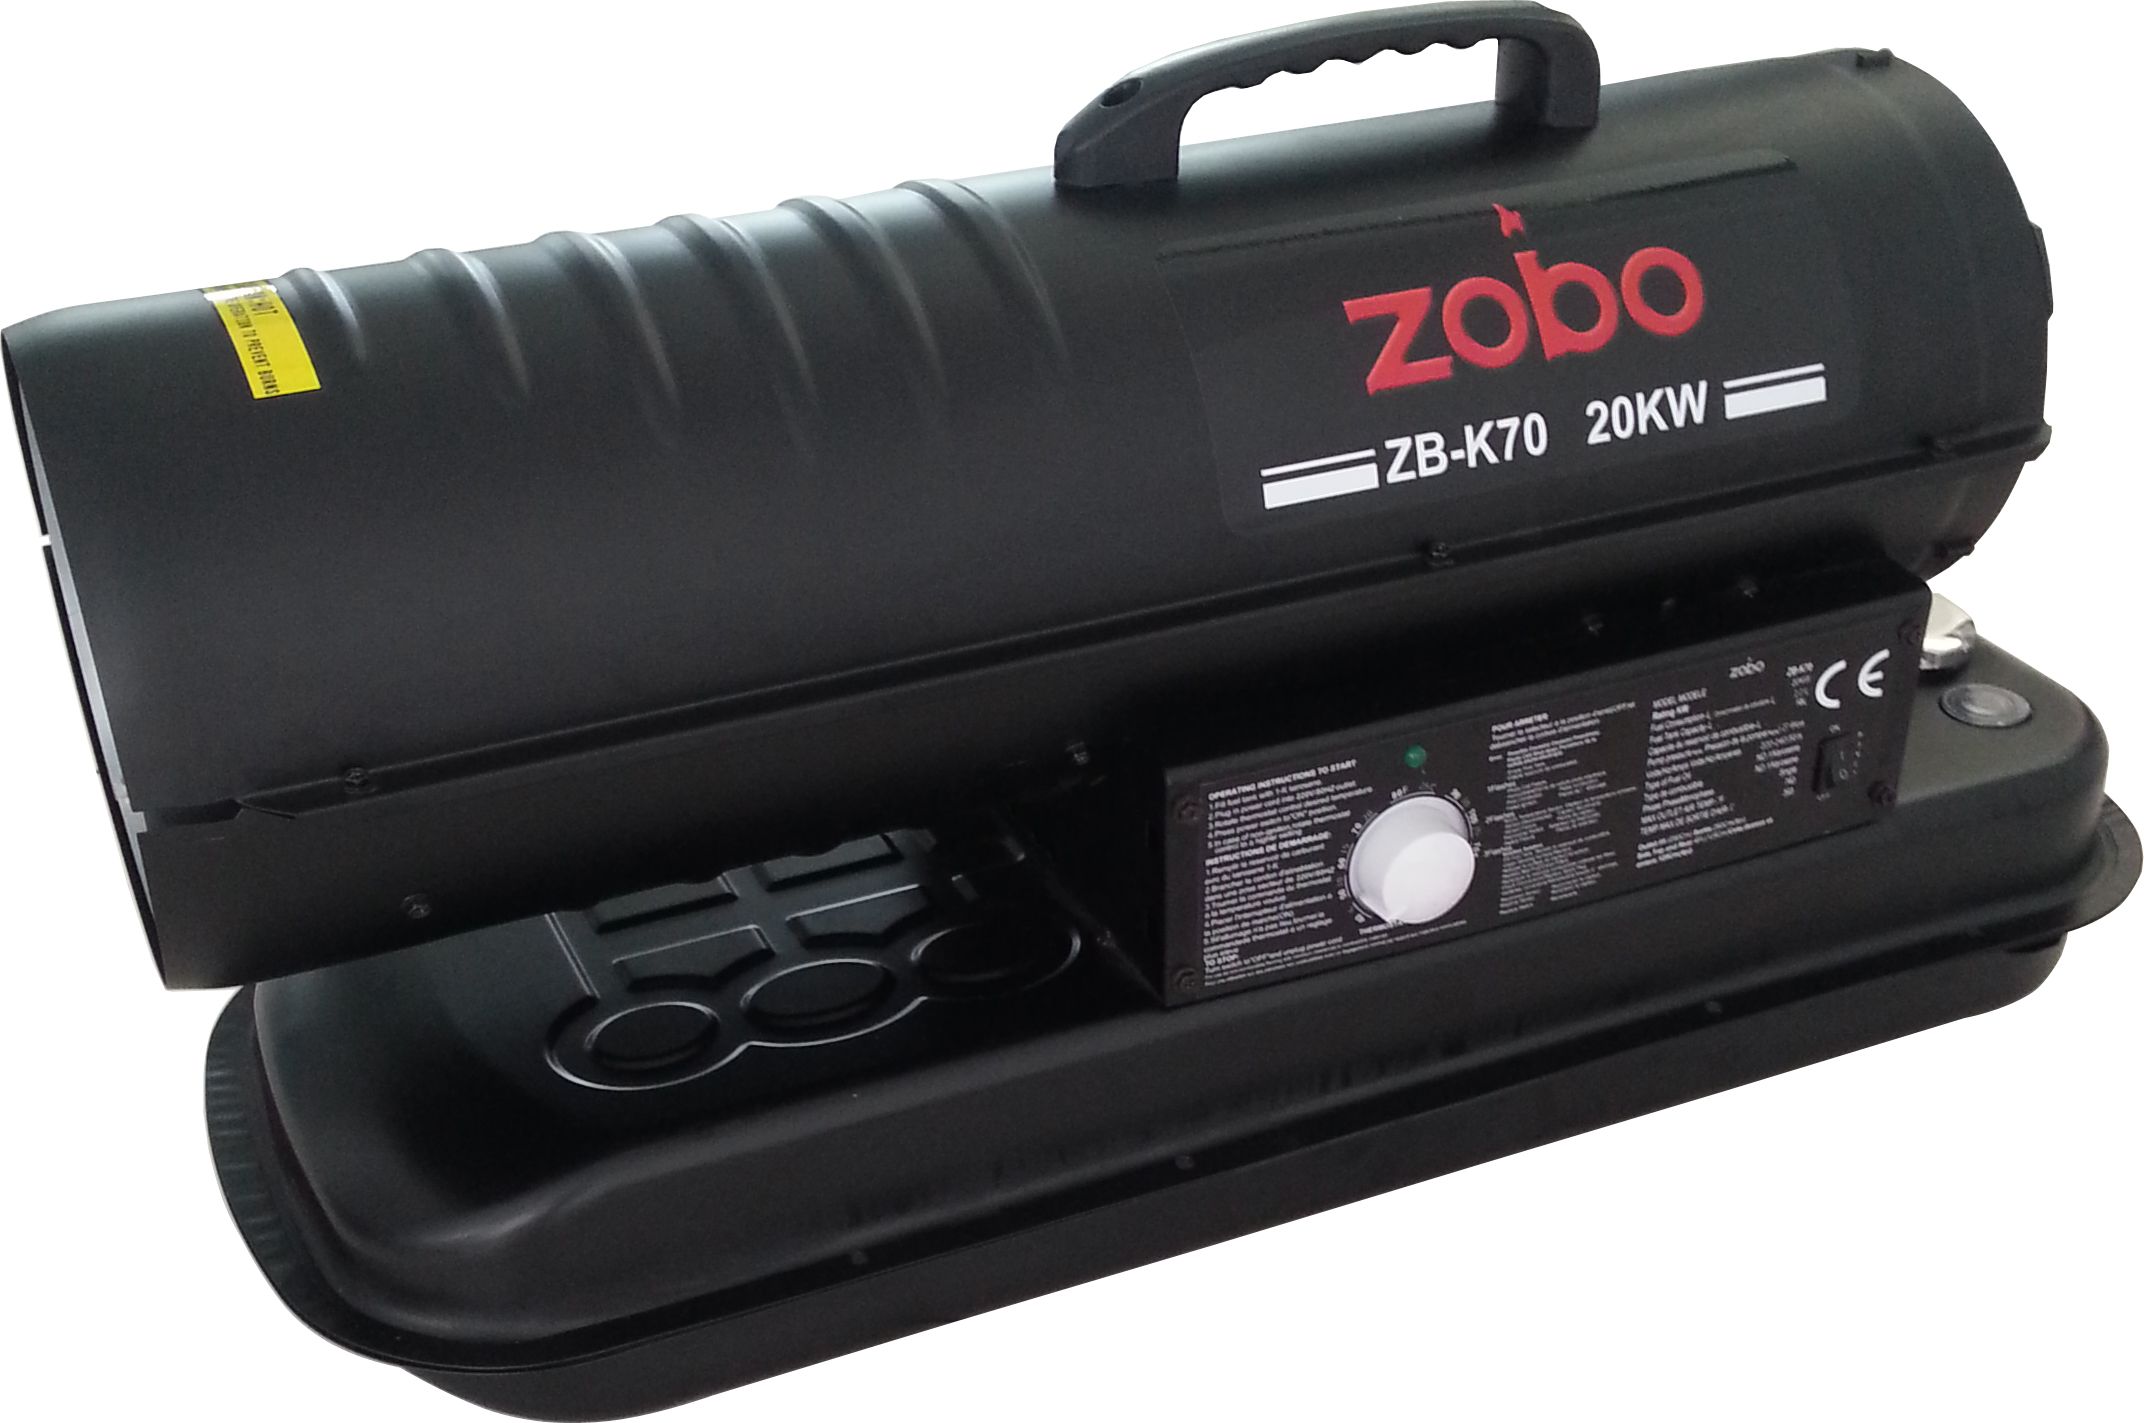 Generatoare aer cald - Tun de aer cald Zobo ZB-K70, putere calorica 20 kW     , climasoft.ro